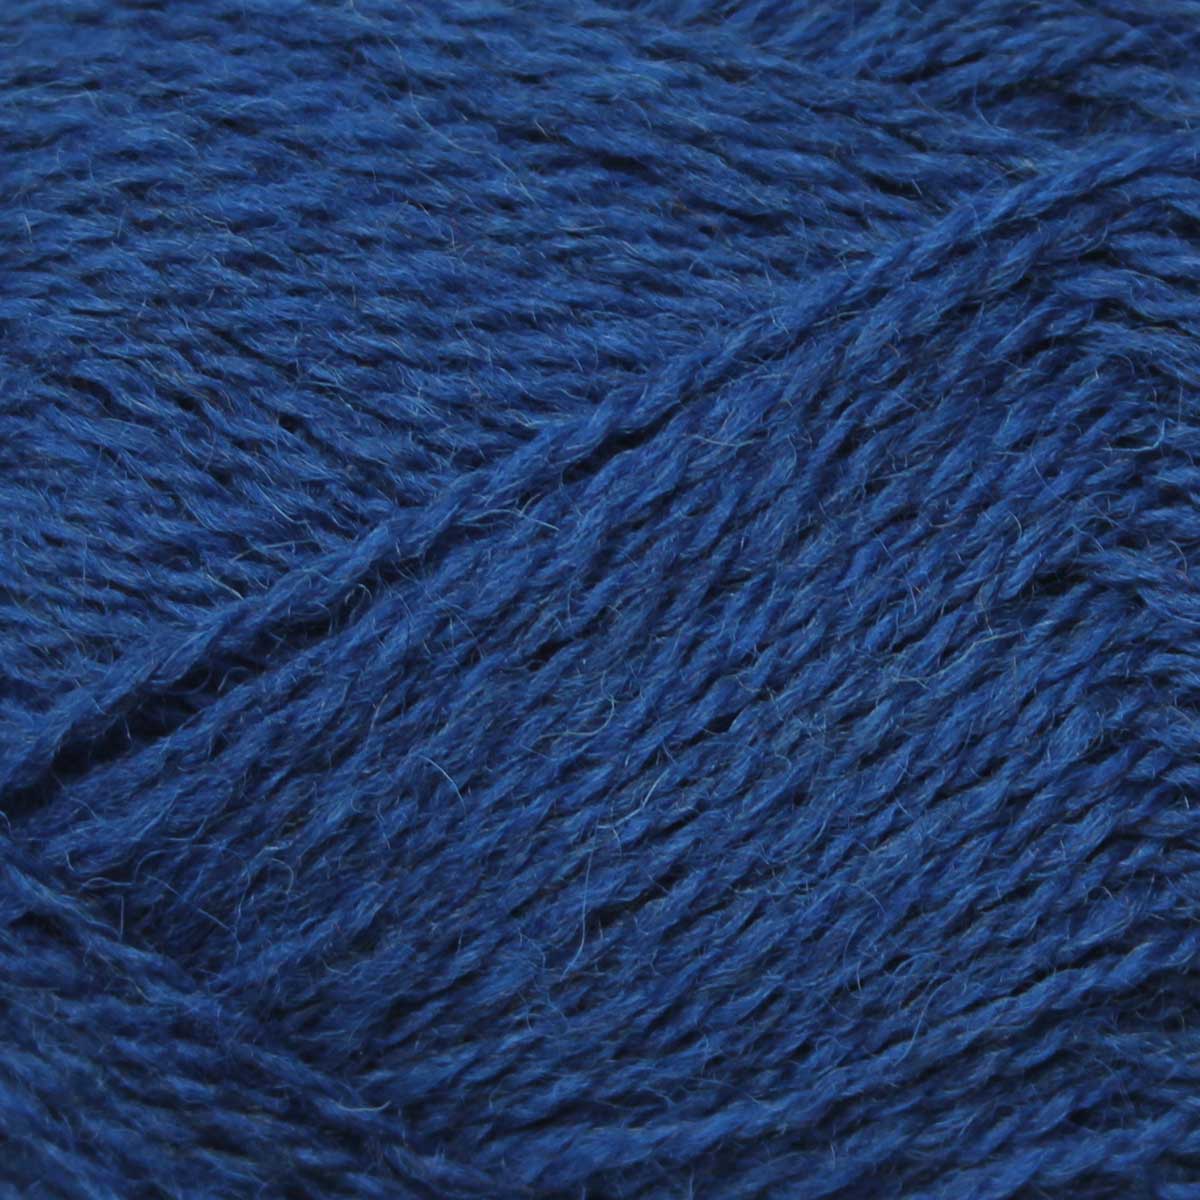 Pip Colourwork 4ply: 100% British Hand Knitting Wool 25g Ball